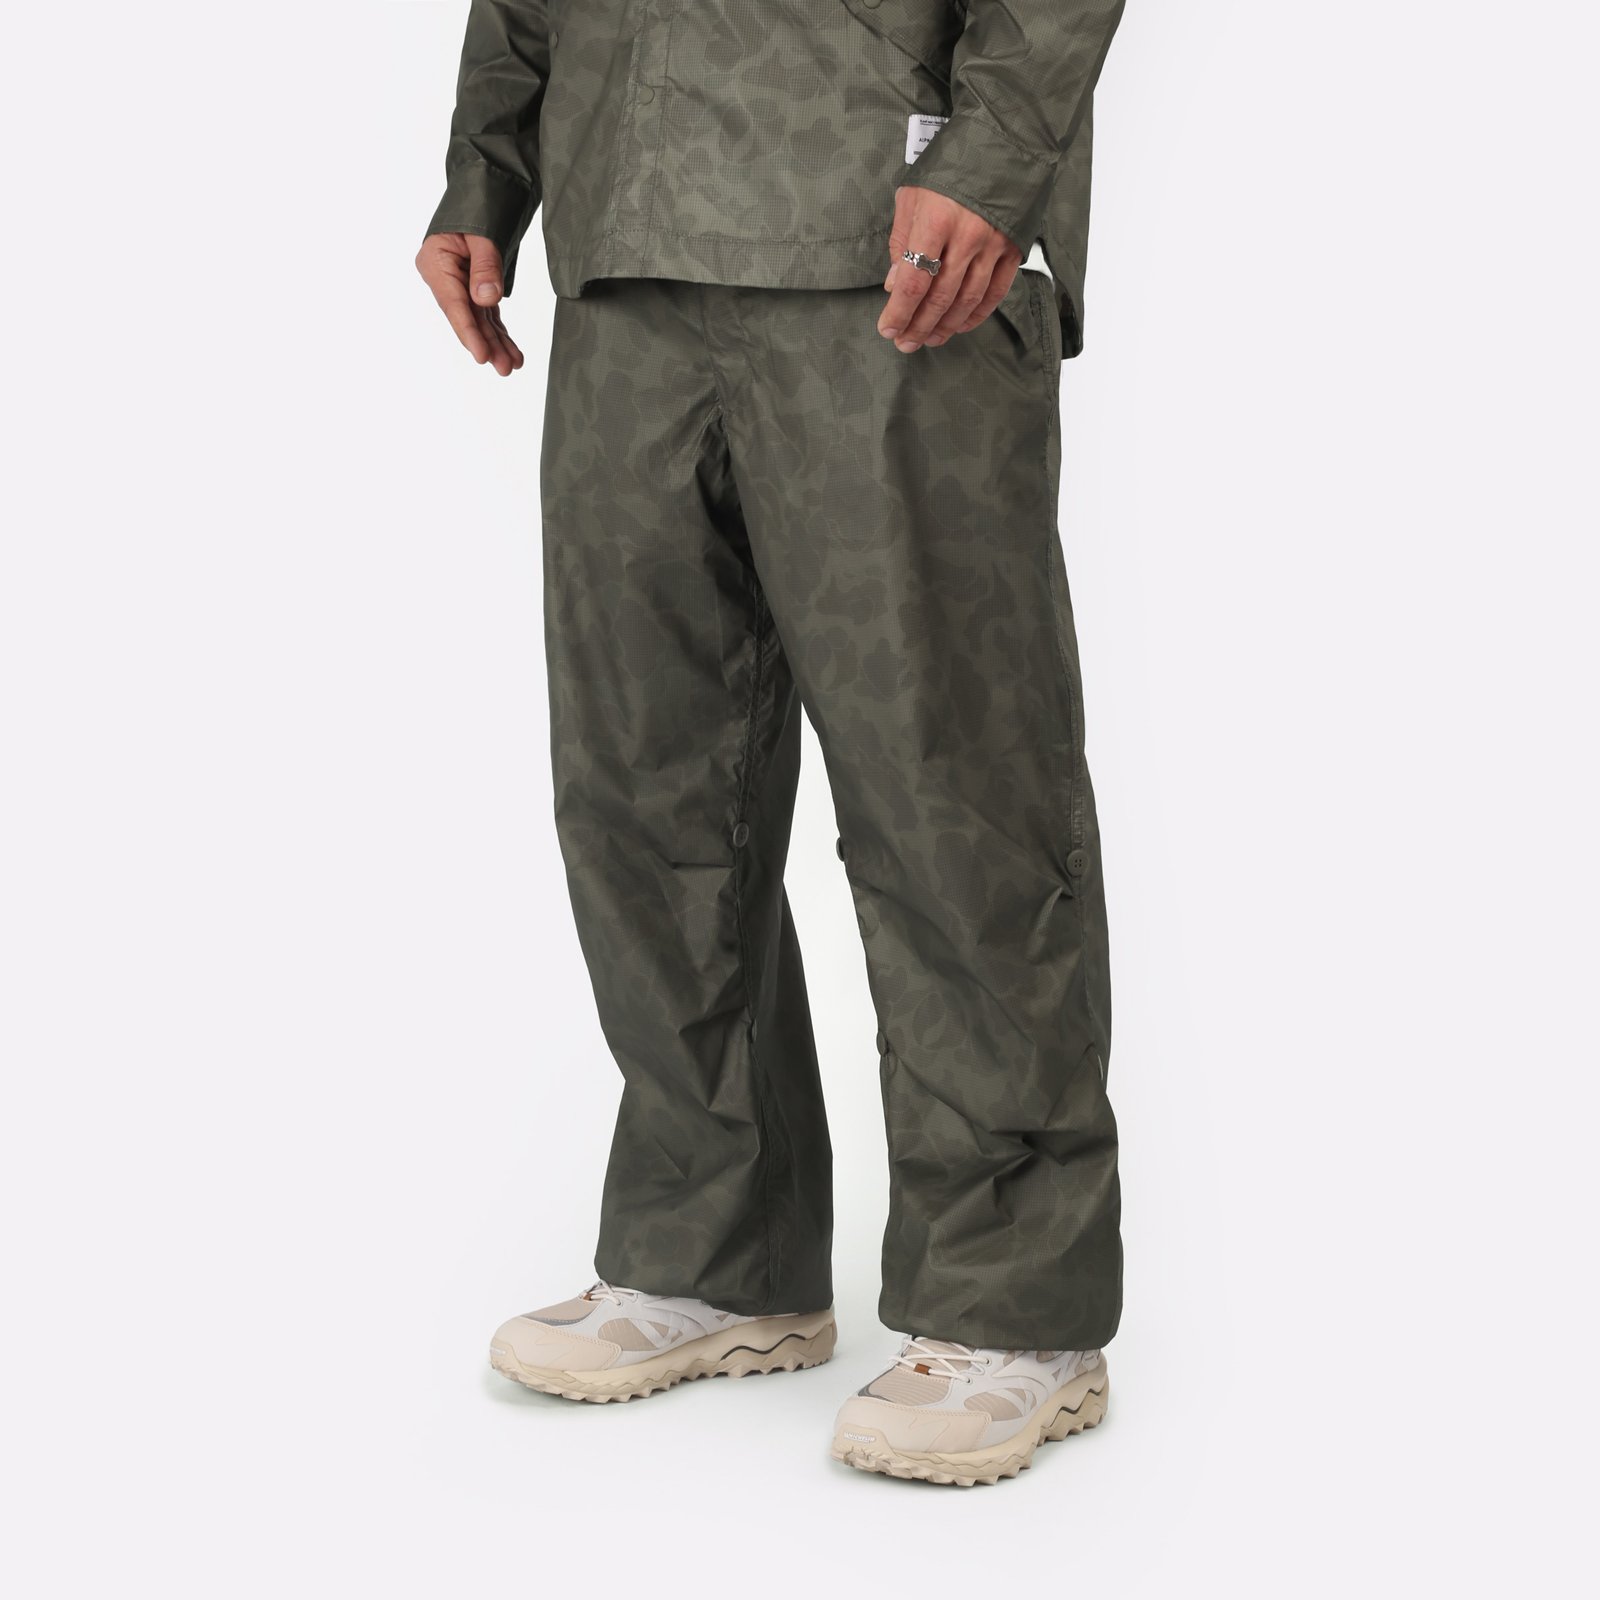 Мужские брюки Alpha Industries Ripstop Parachute Pants (UBU54001C1-OG-107-green)  - цена, описание, фото 3